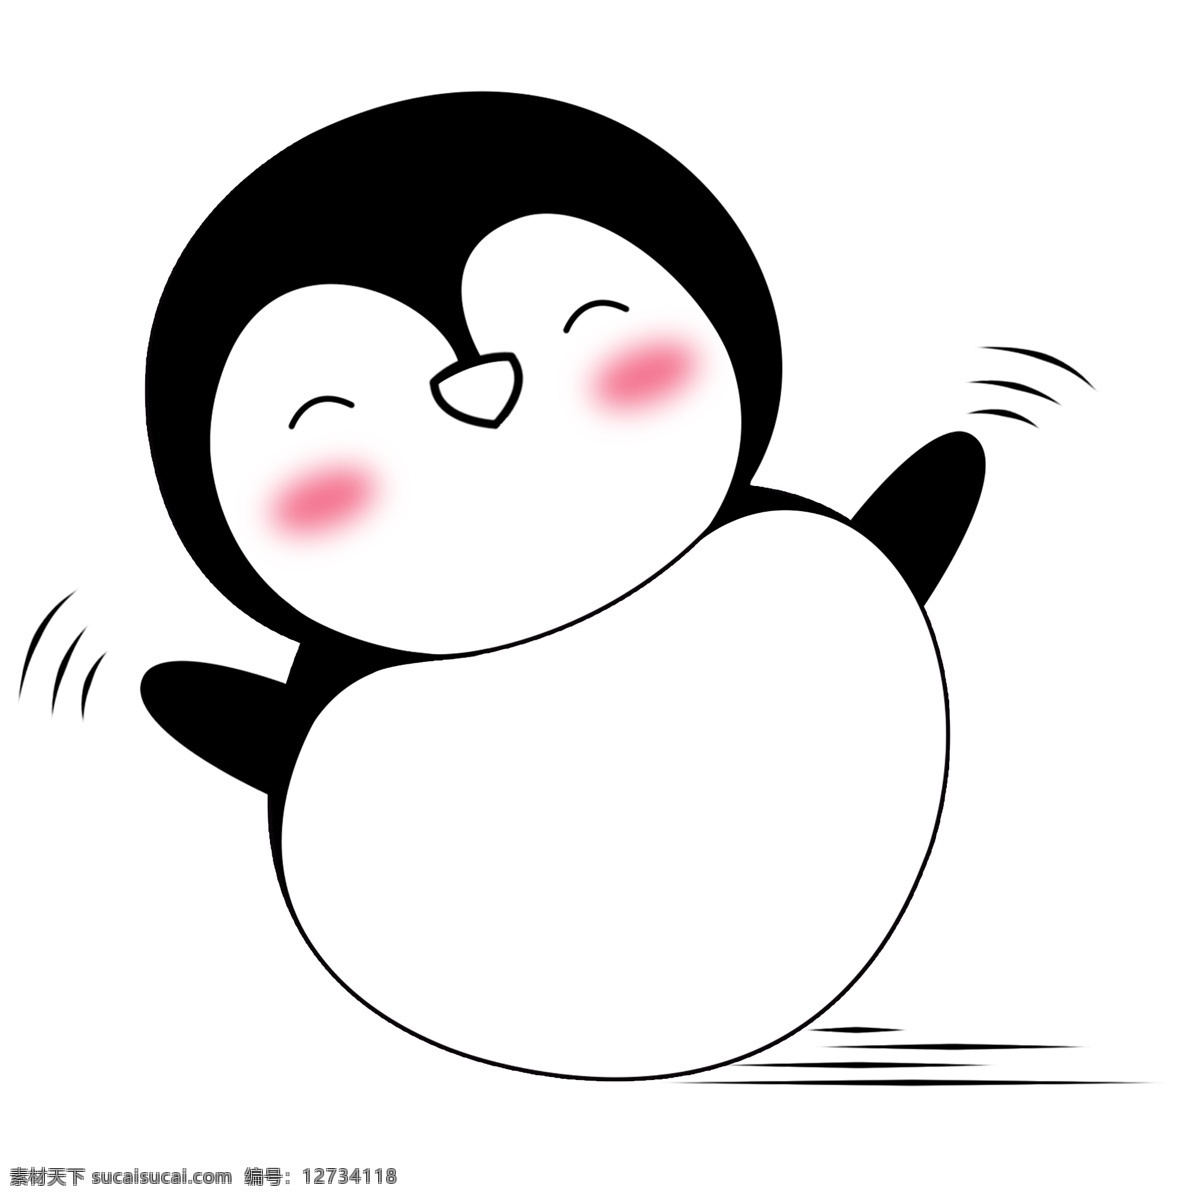 开心 小企鹅 插画 开心的小企鹅 圆形小企鹅 可爱的小企鹅 小动物 卡通小企鹅 开心表情 高兴的小动物